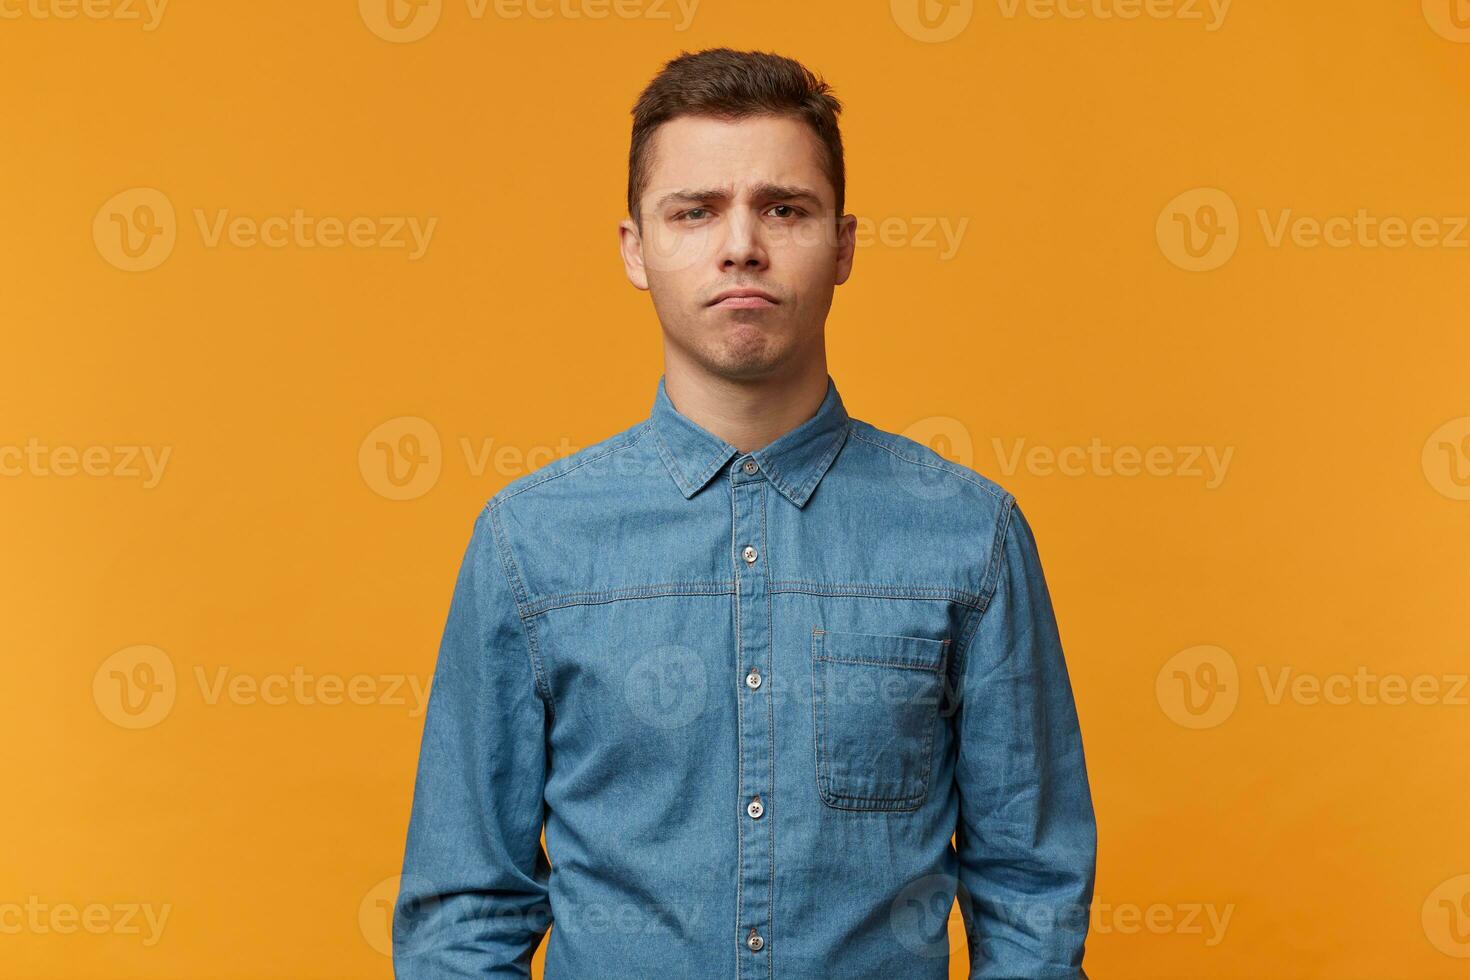 un joven triste chico soportes con un melancólico facial expresión aburrido decepcionado, aislado en contra un amarillo fondo, vestido en un nuevo mezclilla camisa. foto